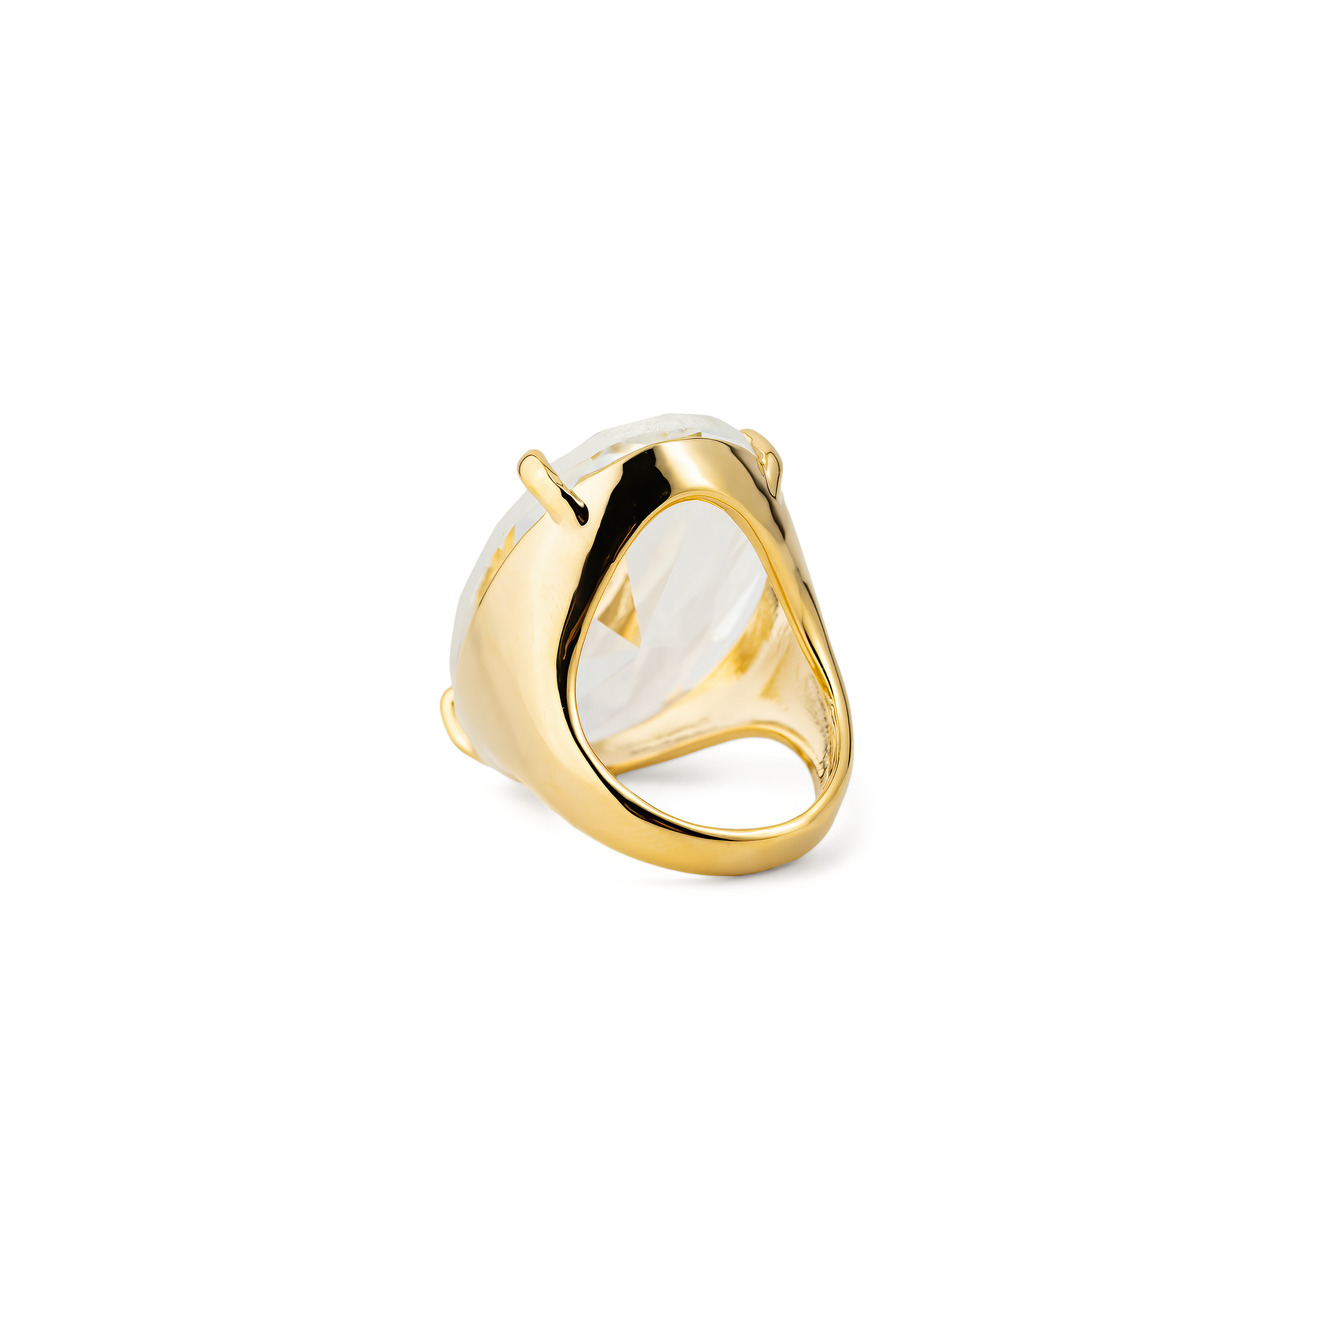 Herald Percy Золотистое кольцо с овальным кристаллом lisa smith золотистое кольцо с узором